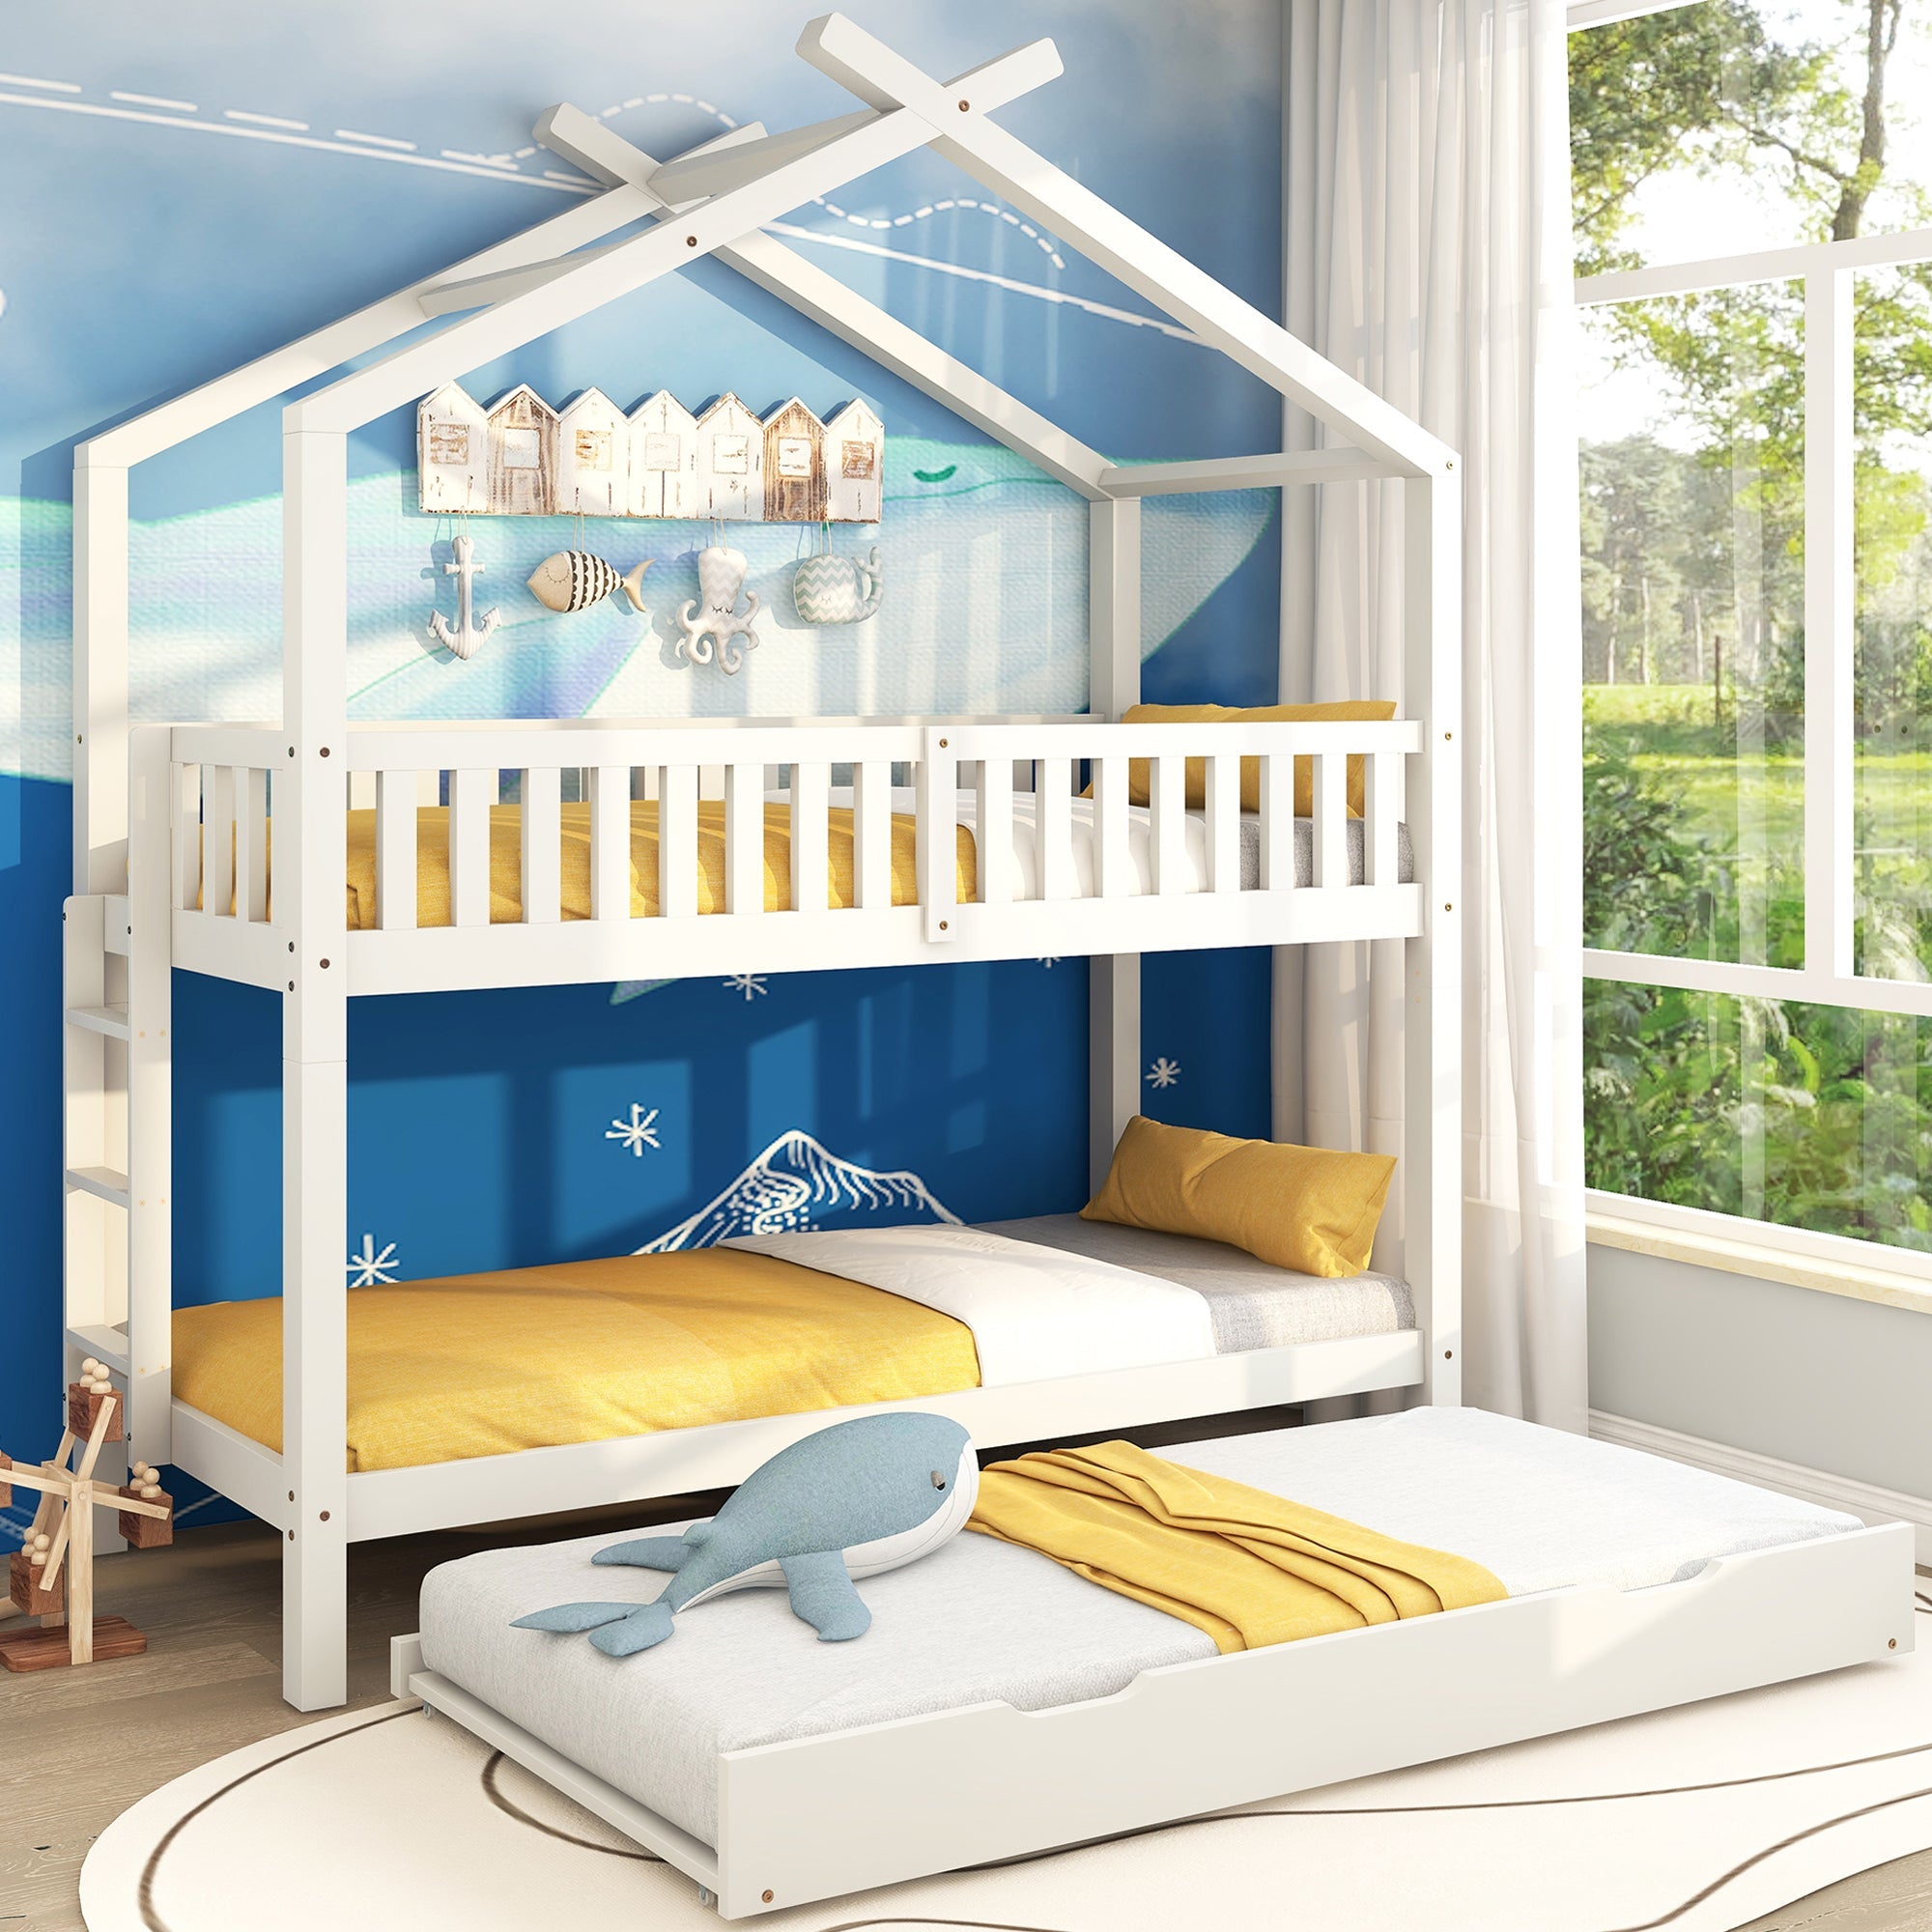 okwish Kinderbett 90x200 cm, Heimbett, Jugendbett, drei Betten ausziehbar, platzsparendes Design, ein Muss für Familien mit vielen Kindern, weiß